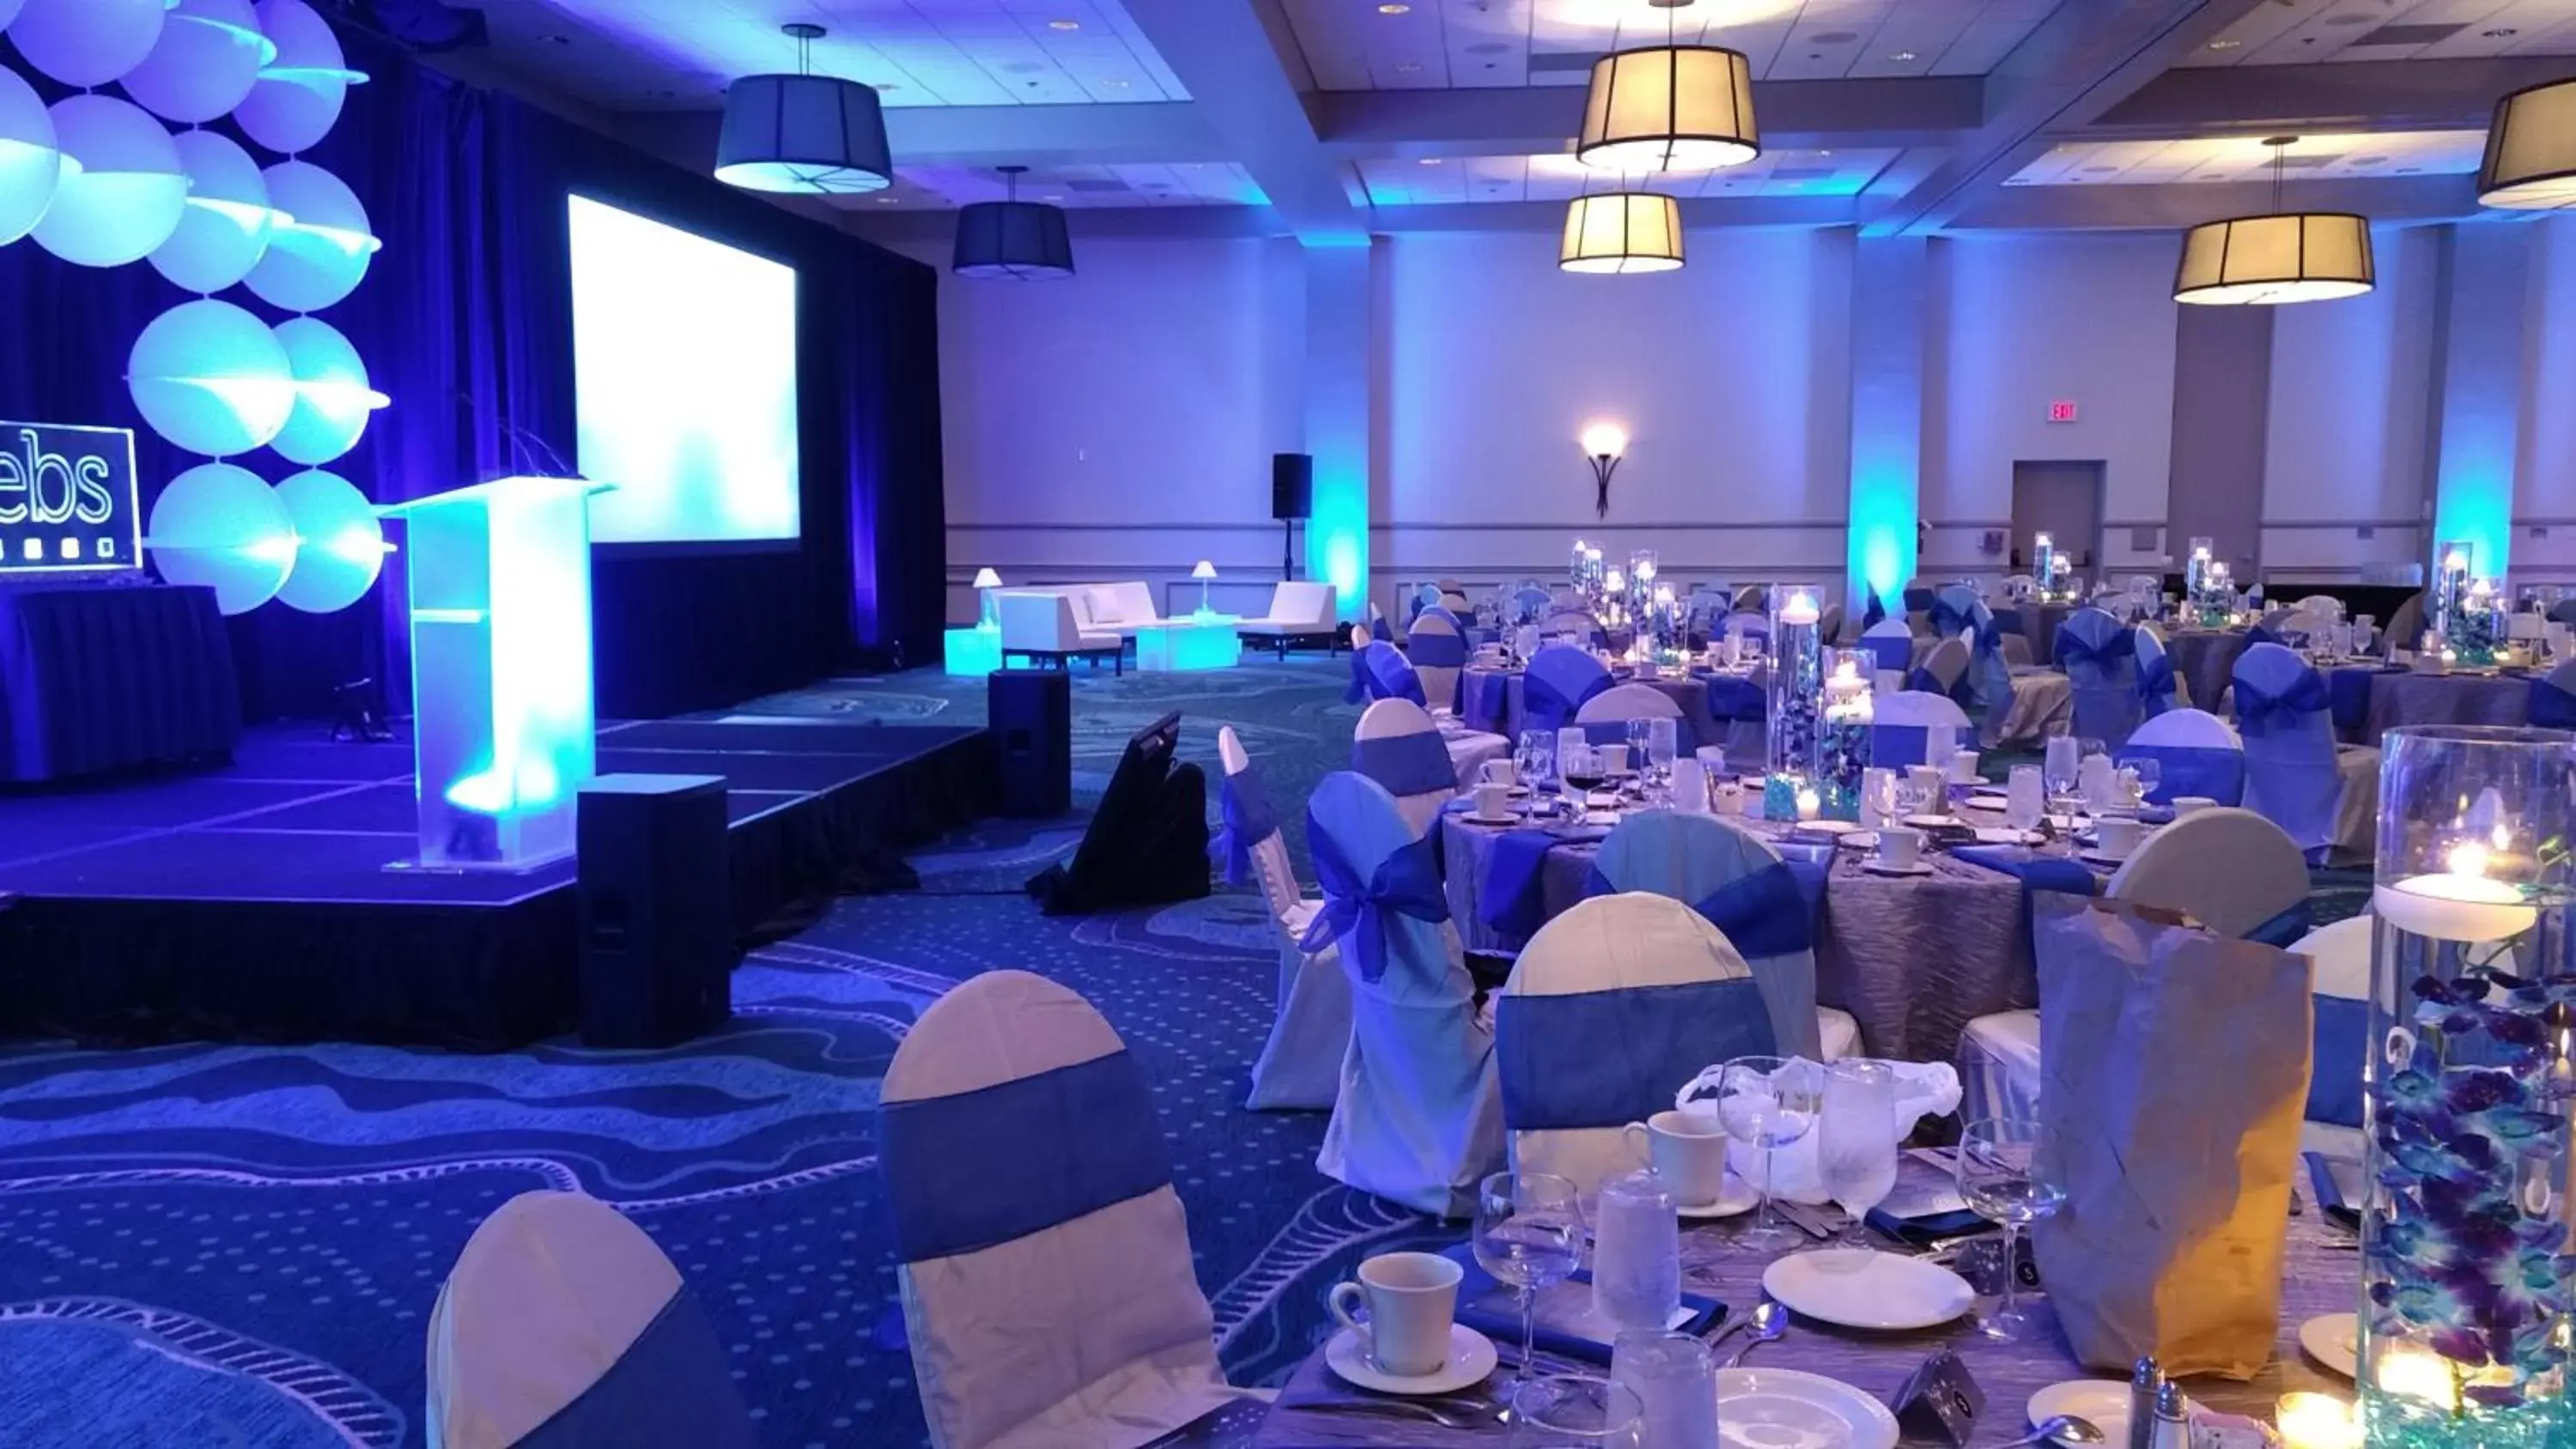 Banquet/Function facilities, Banquet Facilities in Wyndham Lake Buena Vista Resort Disney Springs® Resort Area